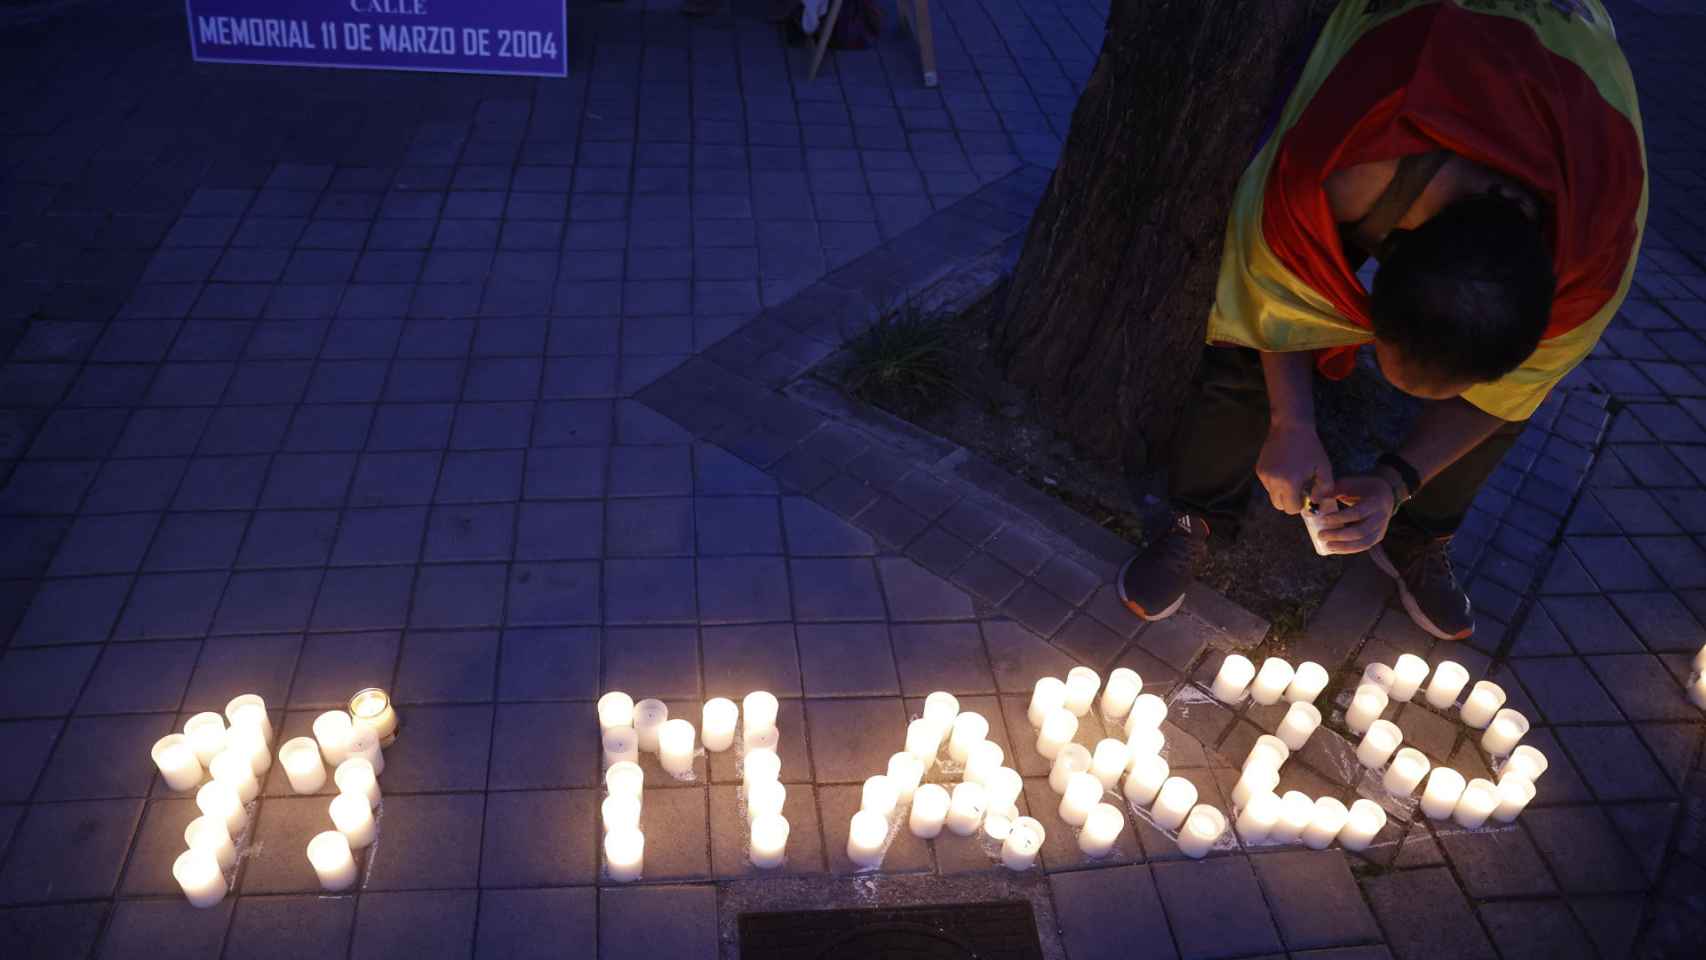 La Plataforma de Calles Dignas de Madrid realiza un homenaje a las víctimas del 11-M mediante la escritura colectiva de una frase formada por 193 velas (una por cada persona fallecida) y la lectura de poemas, este viernes en Madrid.